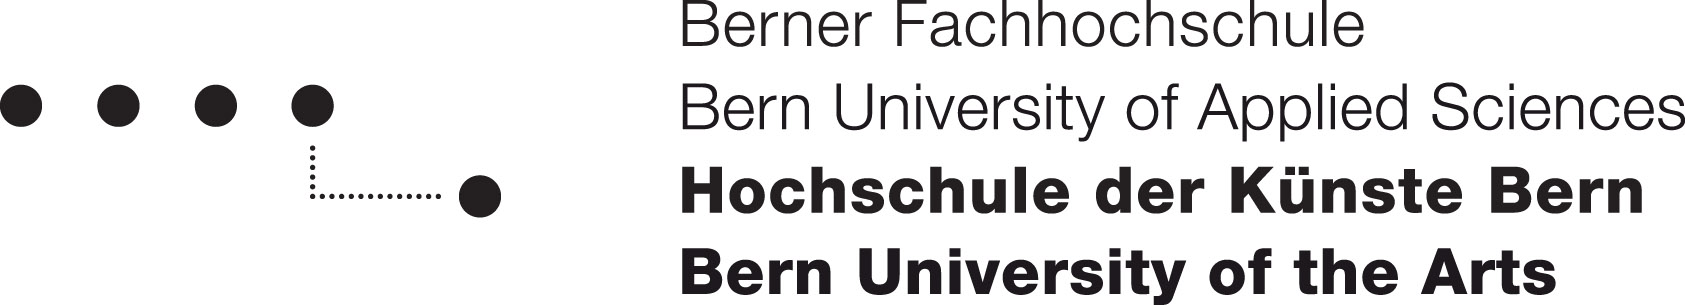 BFH logo